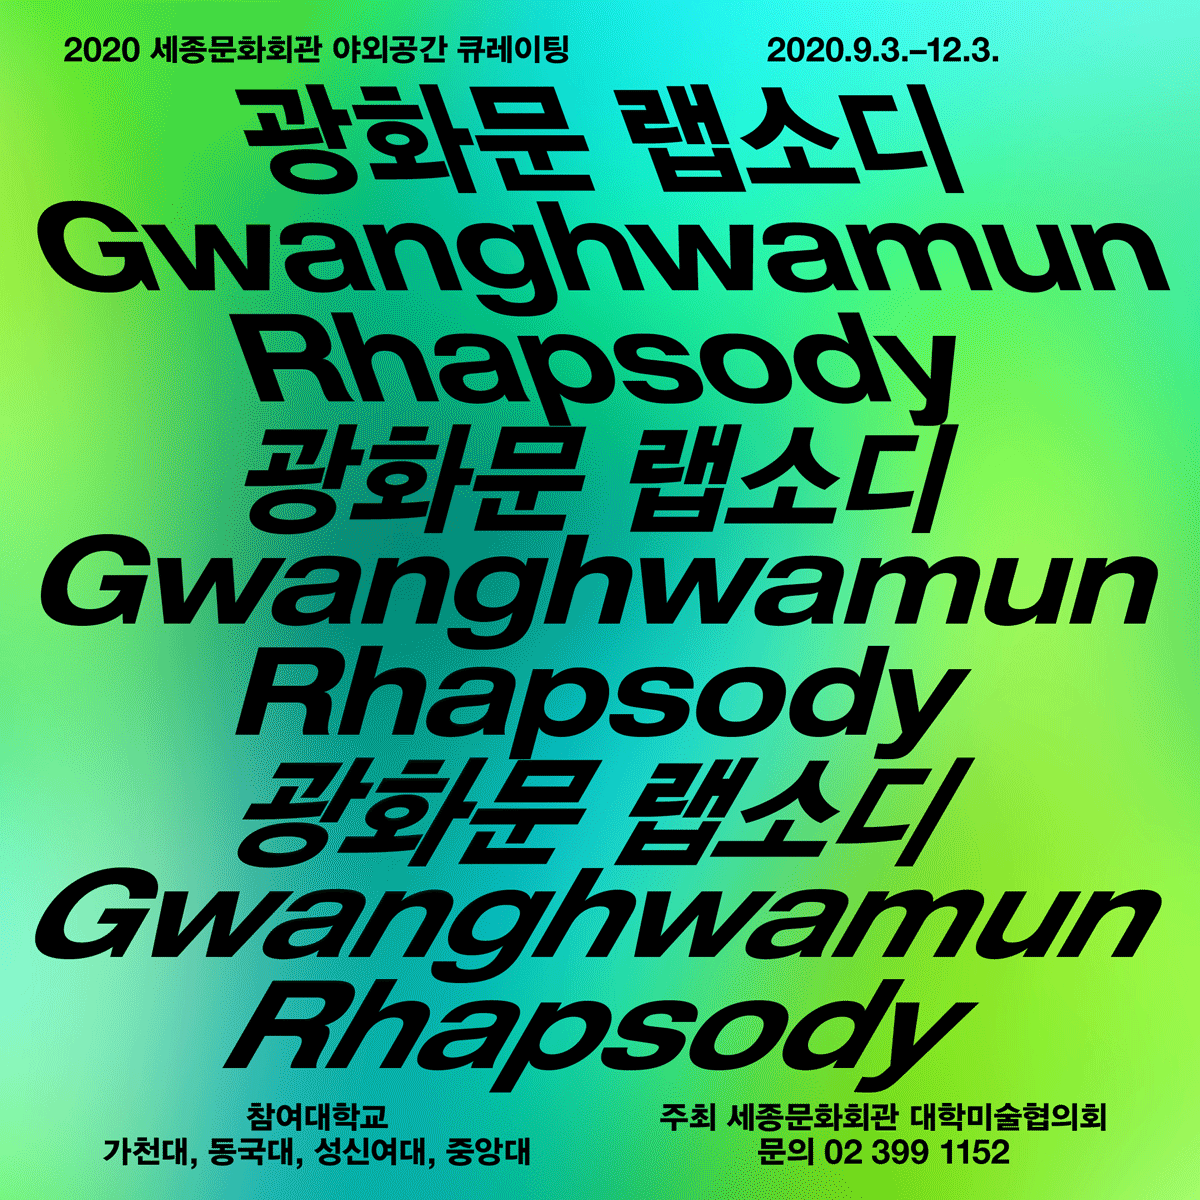 2020世宗文化会馆户外空间策展“光化门狂想曲Gwanghwamun Rhapsody”